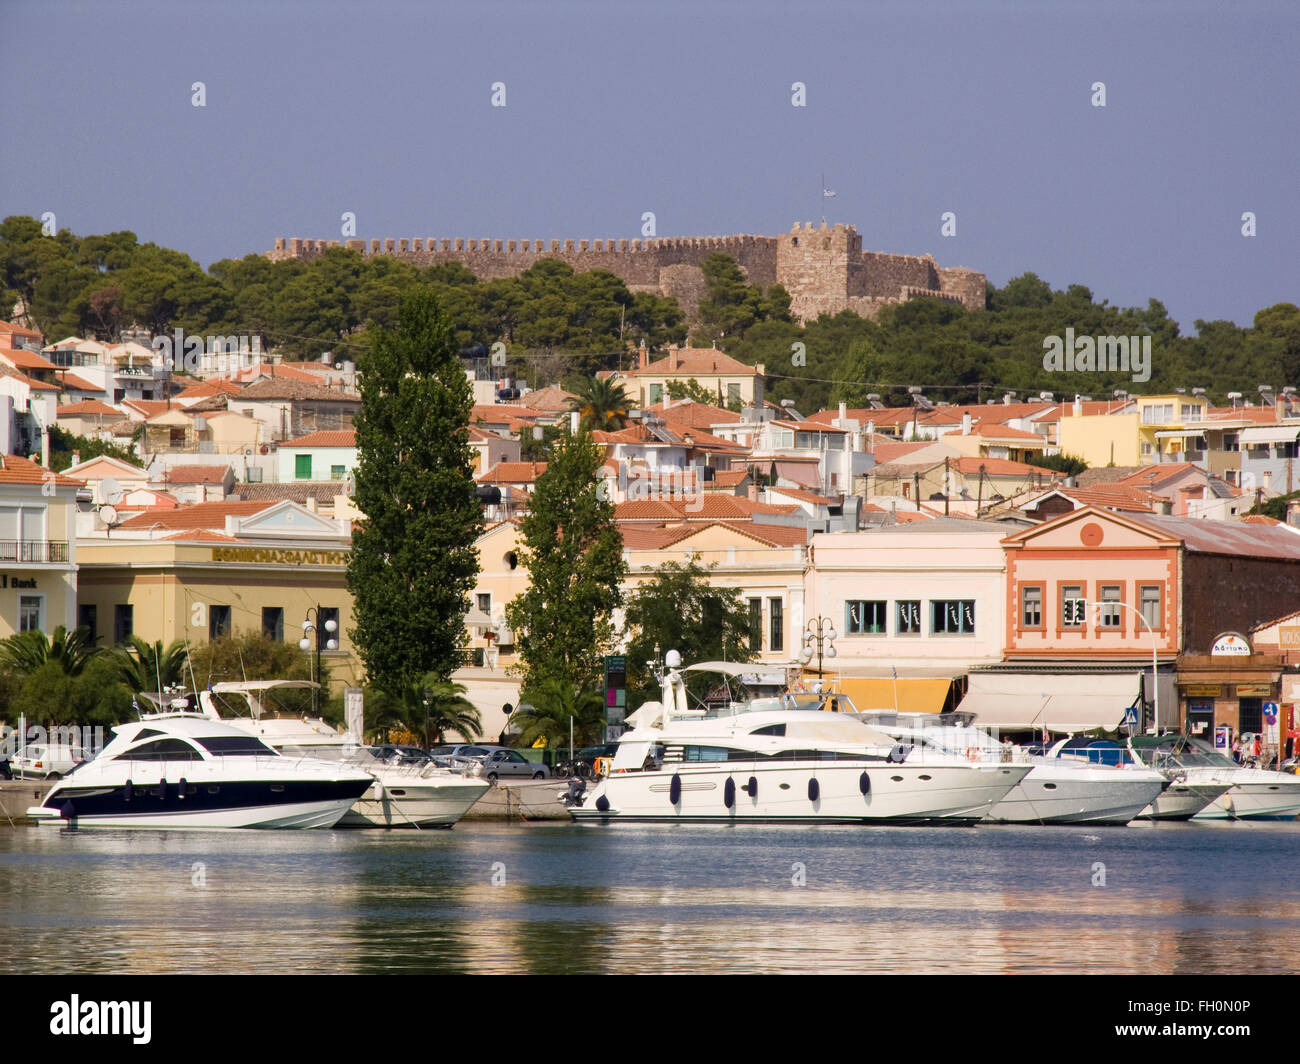 Ville et forteresse, Lesbos Mytilène, Island, au nord-ouest de la mer Égée, Grèce, Europe Banque D'Images